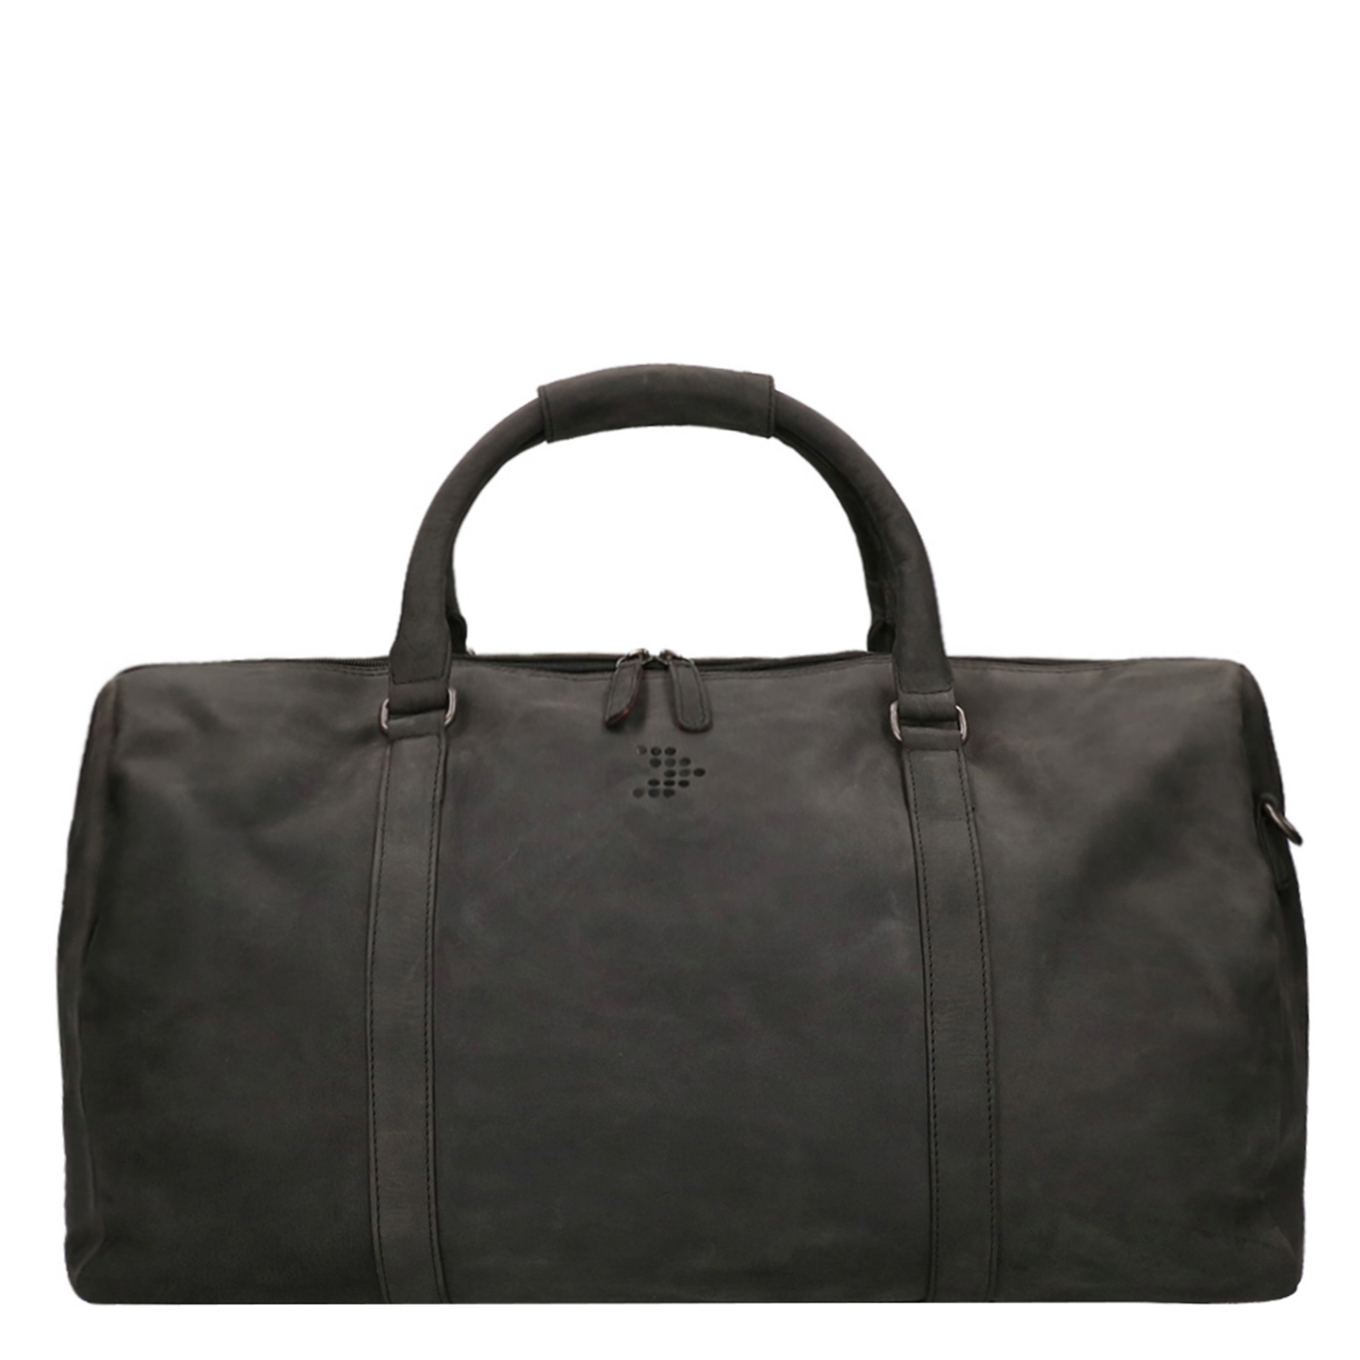 Travelbags The Base Leather Weekender black Weekendtas